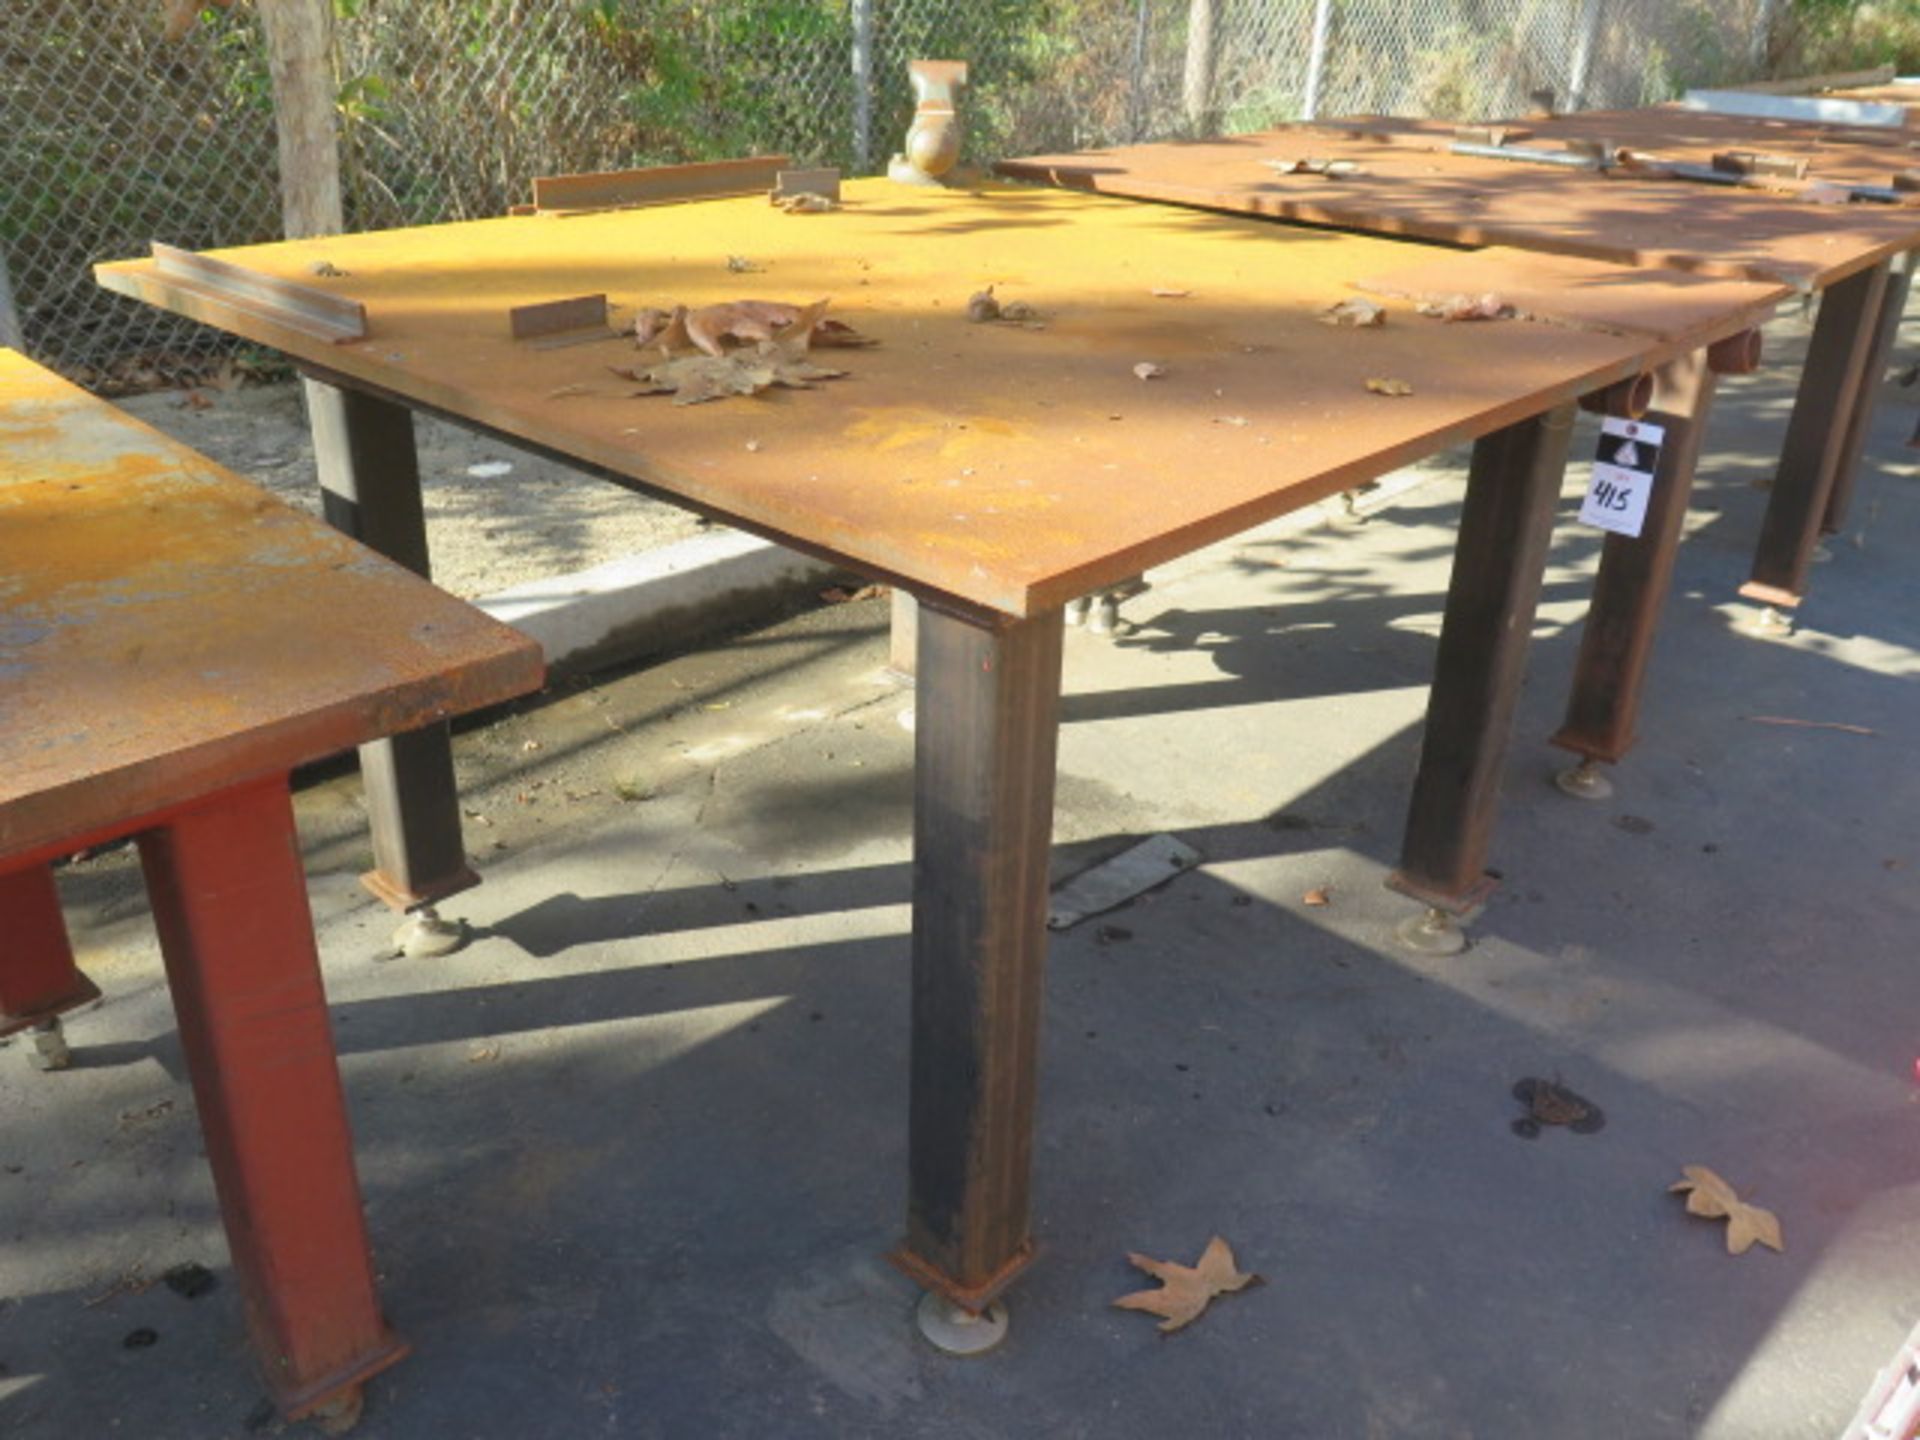 5' x 5' x 1" Steel Welding Table w/ Wilton 4" Bench Vise (SOLD AS-IS - NO WARRANTY)